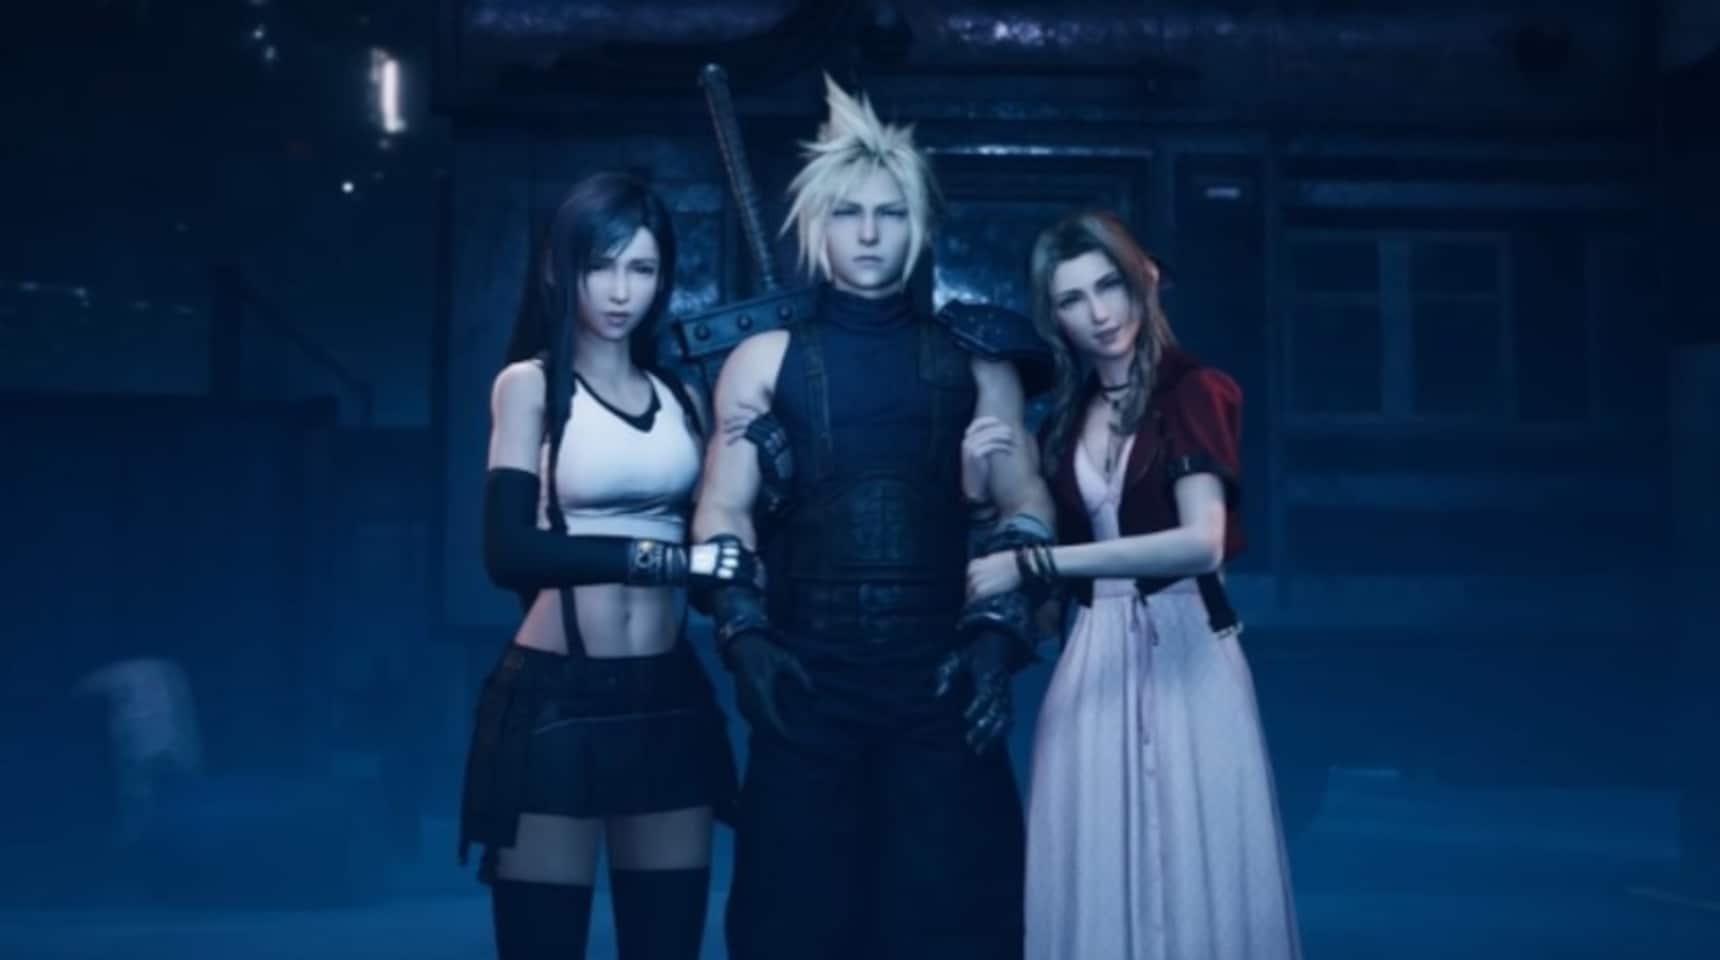 Updated Final Fantasy VII Remake Teaser Video